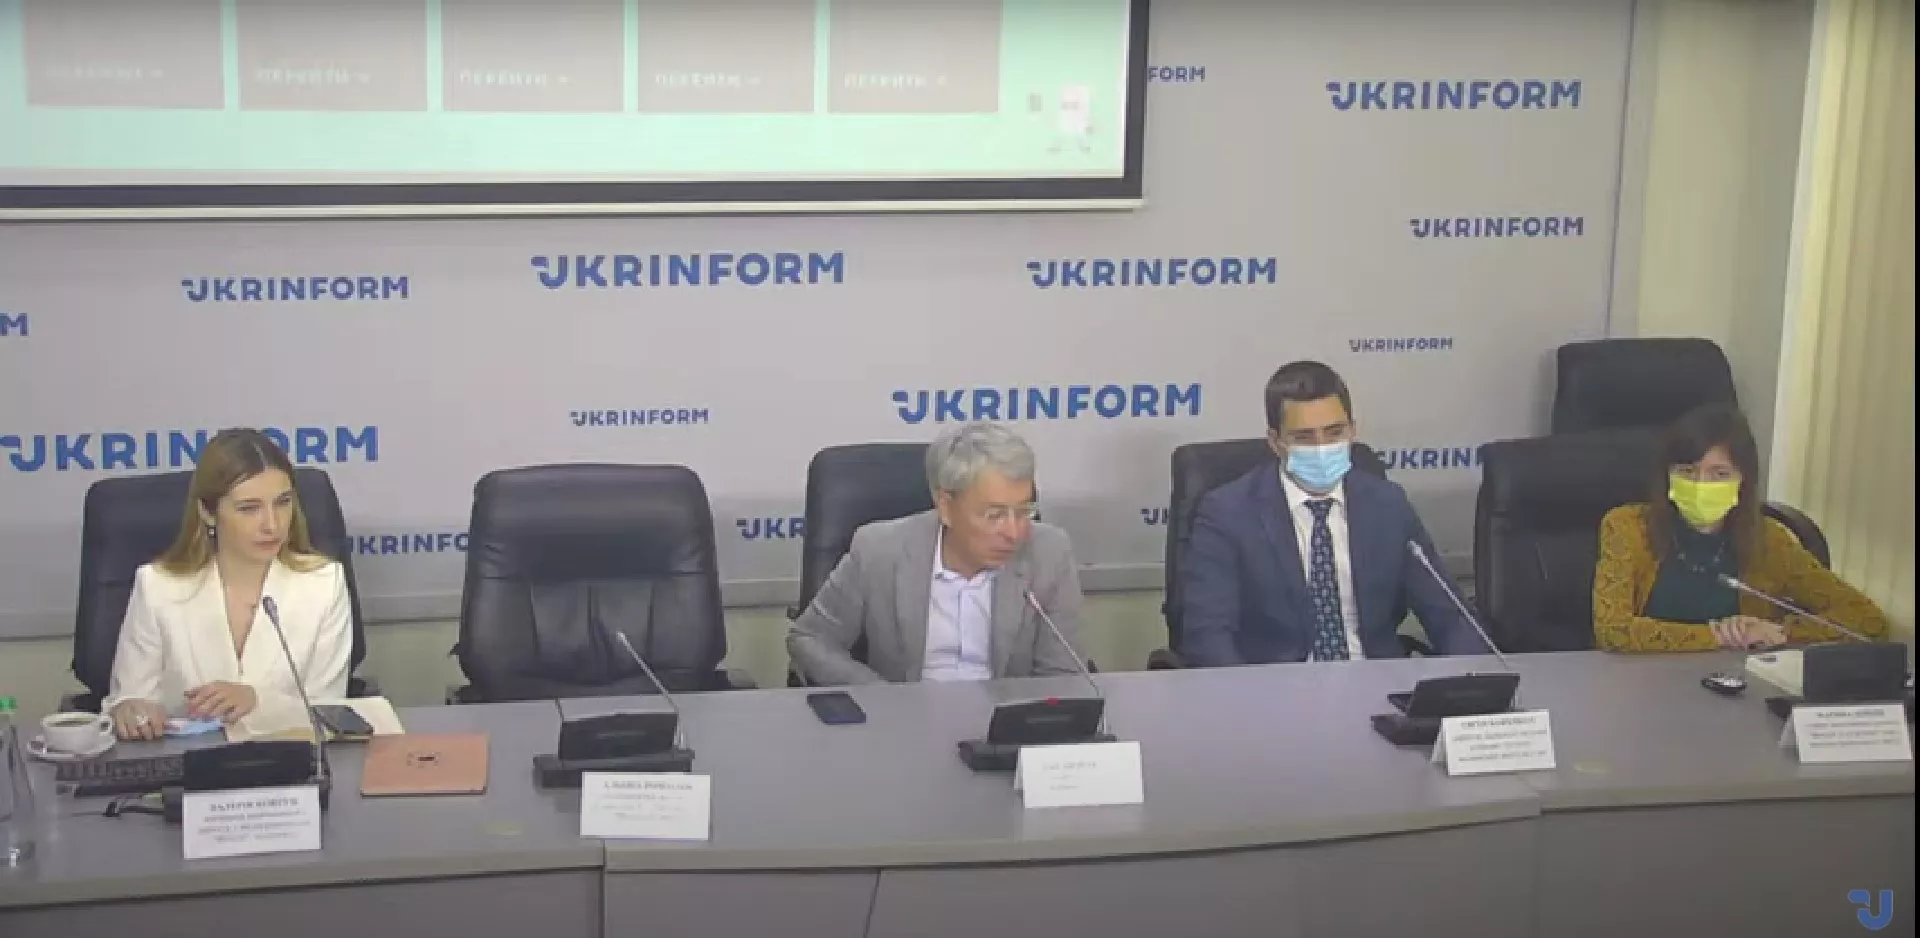 В Україні проведуть загальнонаціональний урок з медіаграмотності